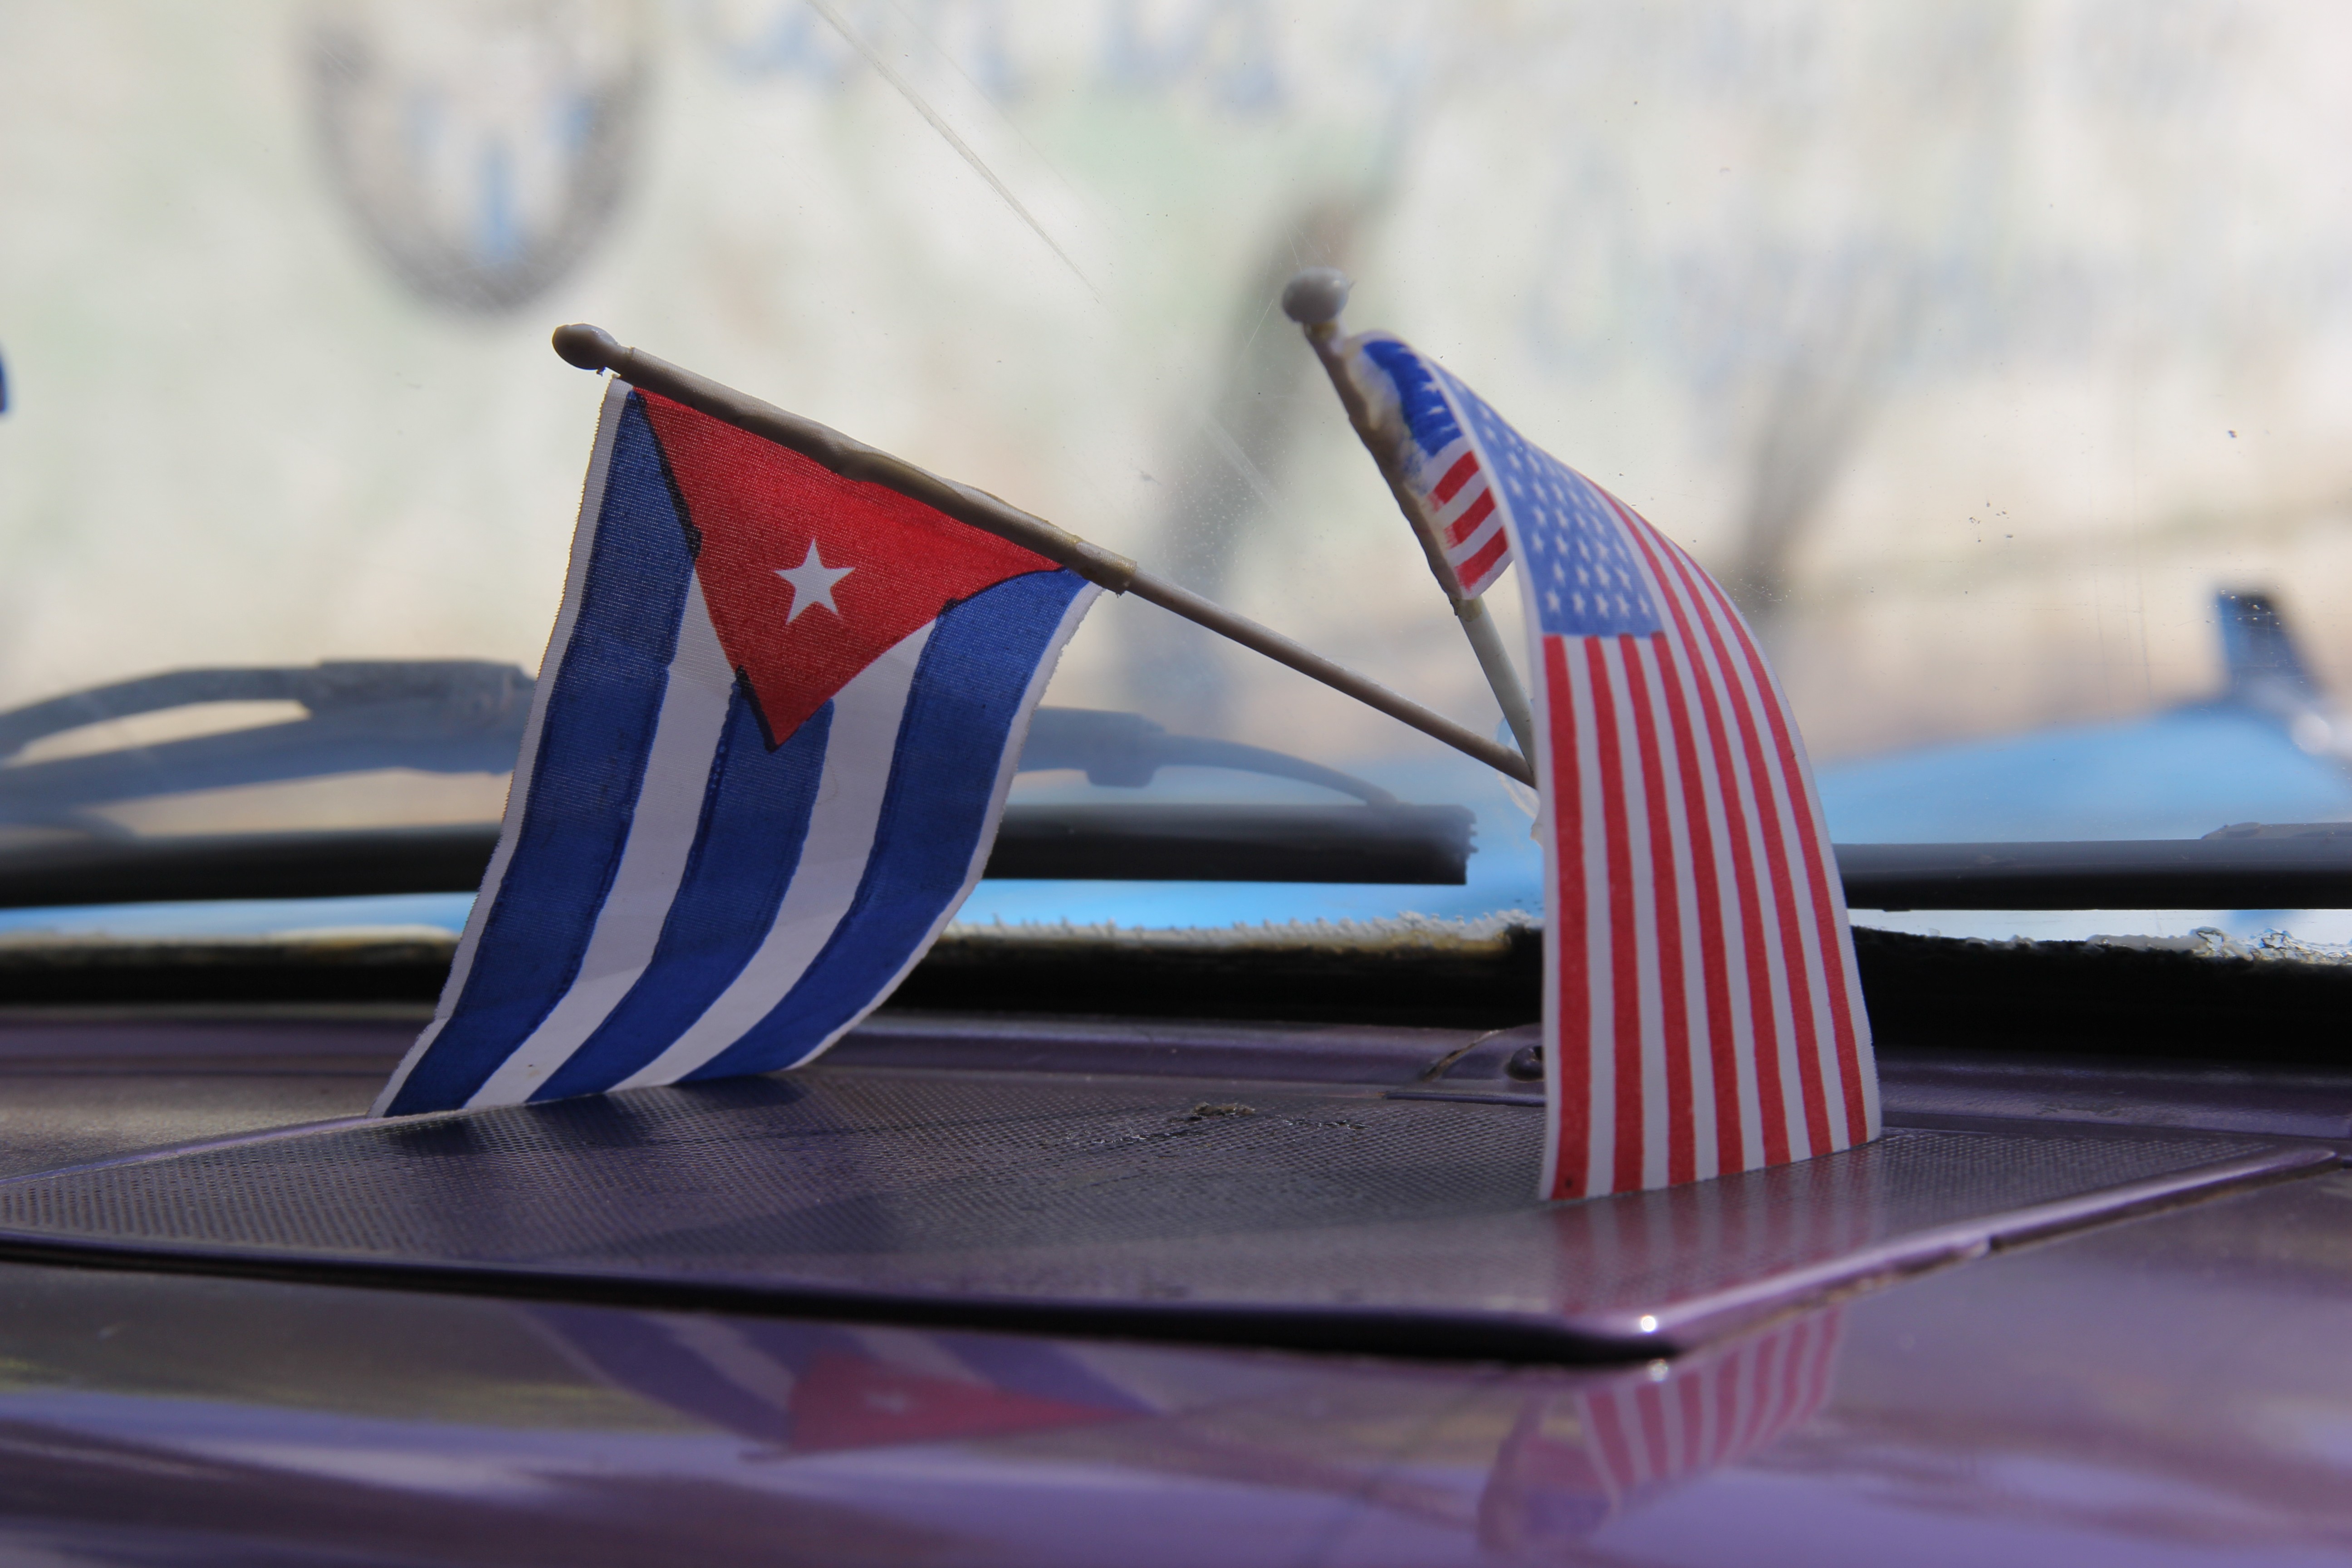 Carro carrega bandeiras dos EUA e de Cuba em Havana (Foto: Getty Images)